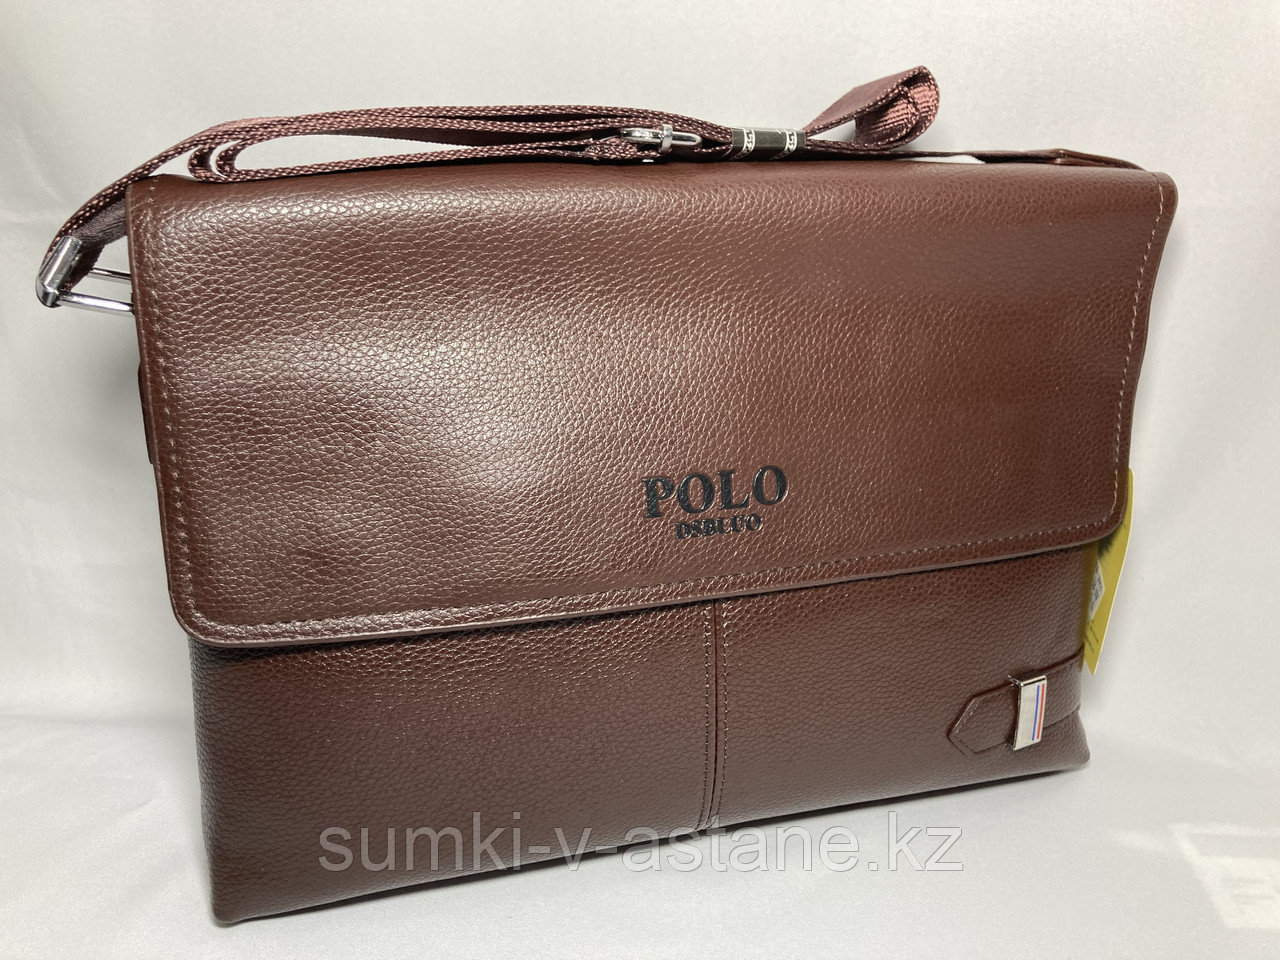 Мужская сумка мессенджер через плечо "POLO" (высота 24 см, ширина 34 см, глубина 6 см)